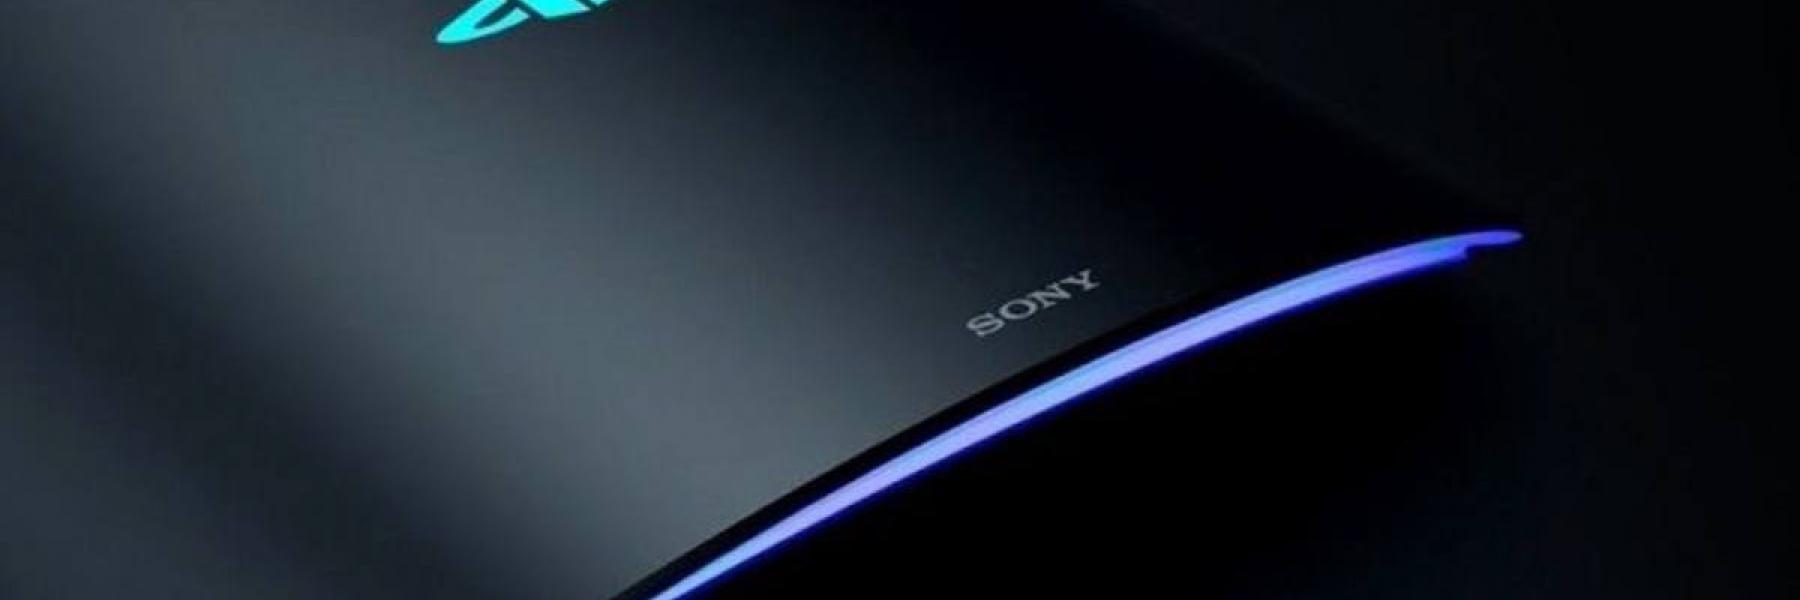 شركة سوني تظهر التصميم النهائي لجهاز PS5 وتكشف عن تفاصيل بعض الألعاب